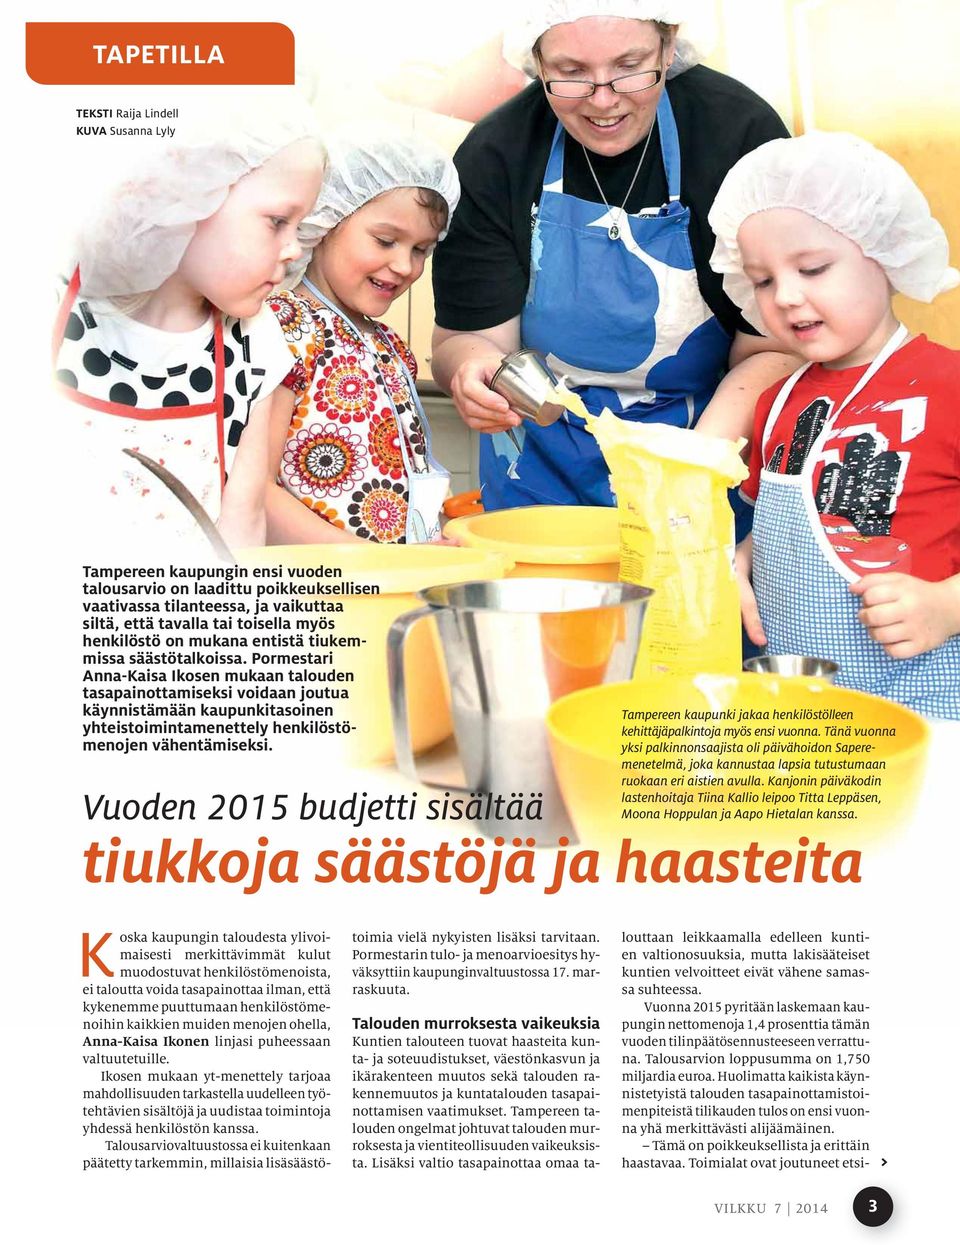 Pormestari Anna-Kaisa Ikosen mukaan talouden tasapainottamiseksi voidaan joutua käynnistämään kaupunkitasoinen Tampereen kaupunki jakaa henkilöstölleen yhteistoimintamenettely henkilöstömenojen